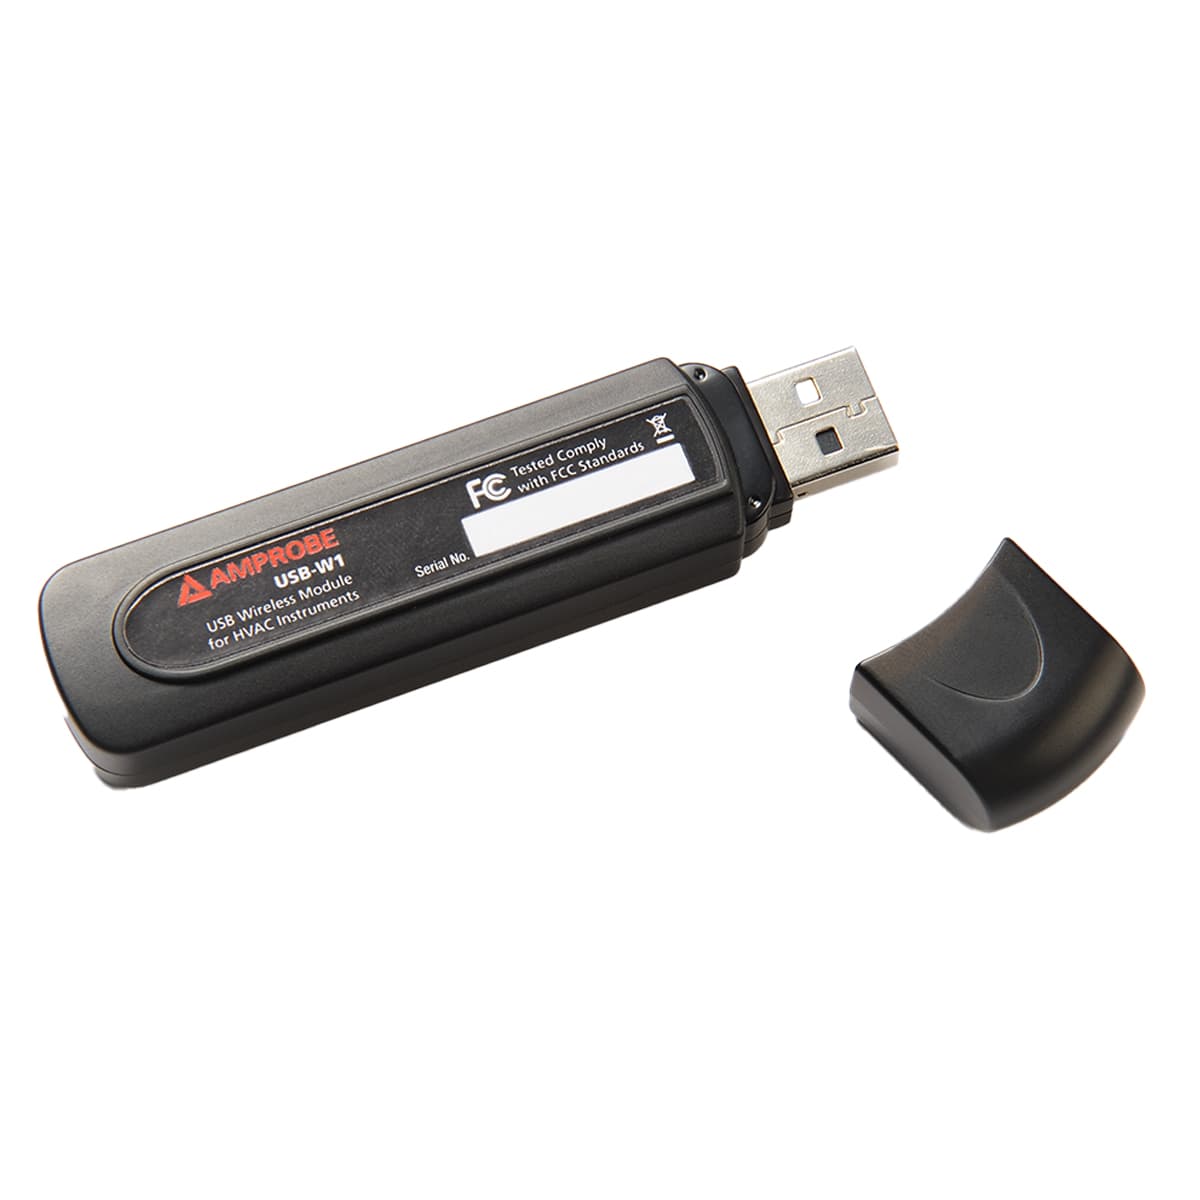 imagen principal de producto Módulo inalámbrico USB para intrumentos de HVAC. USB-W1